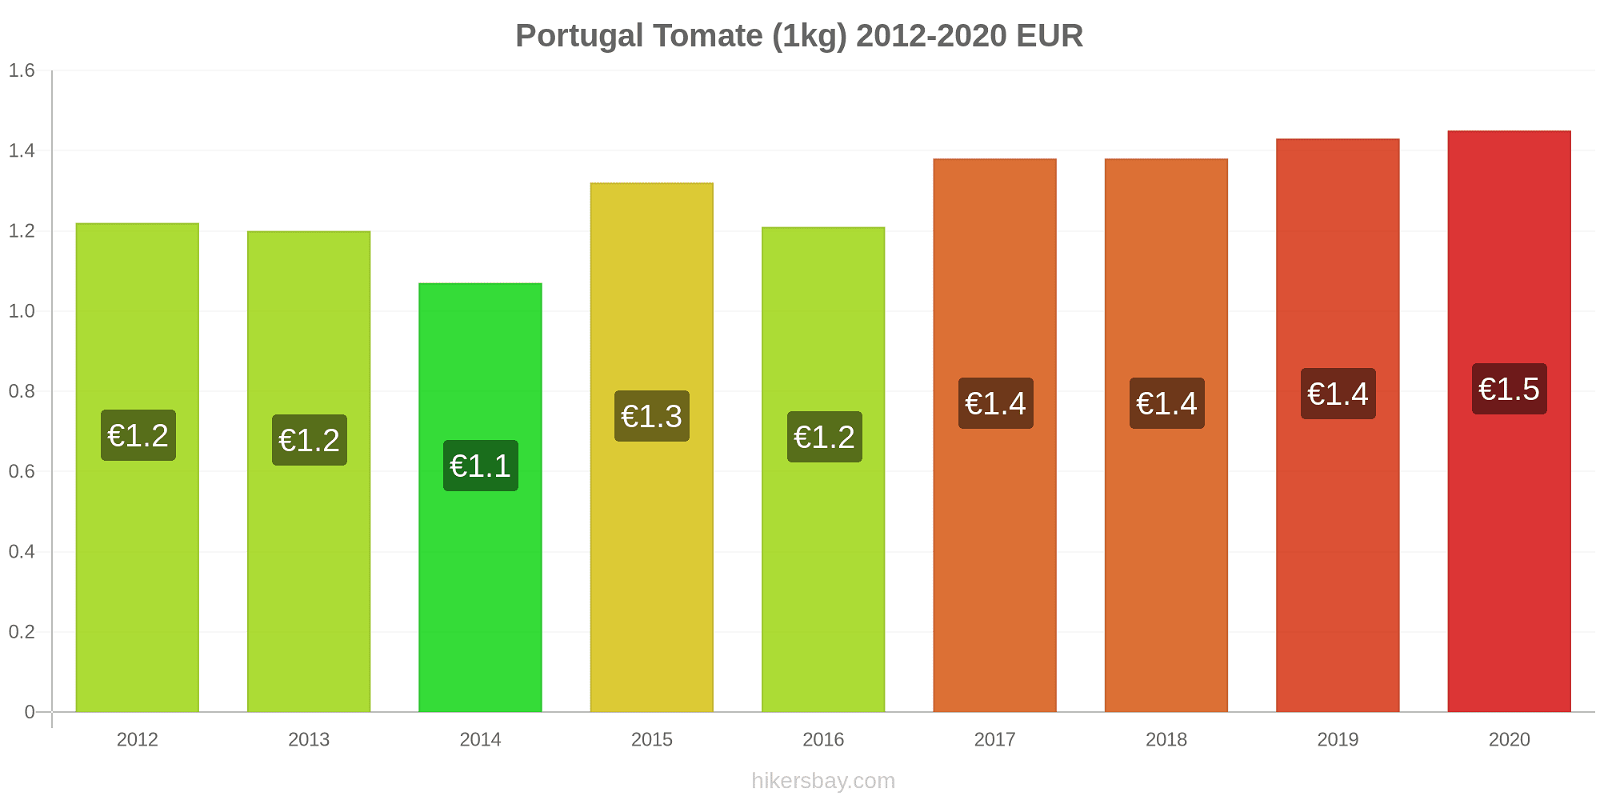 Portugal variação de preço Tomate (1kg) hikersbay.com